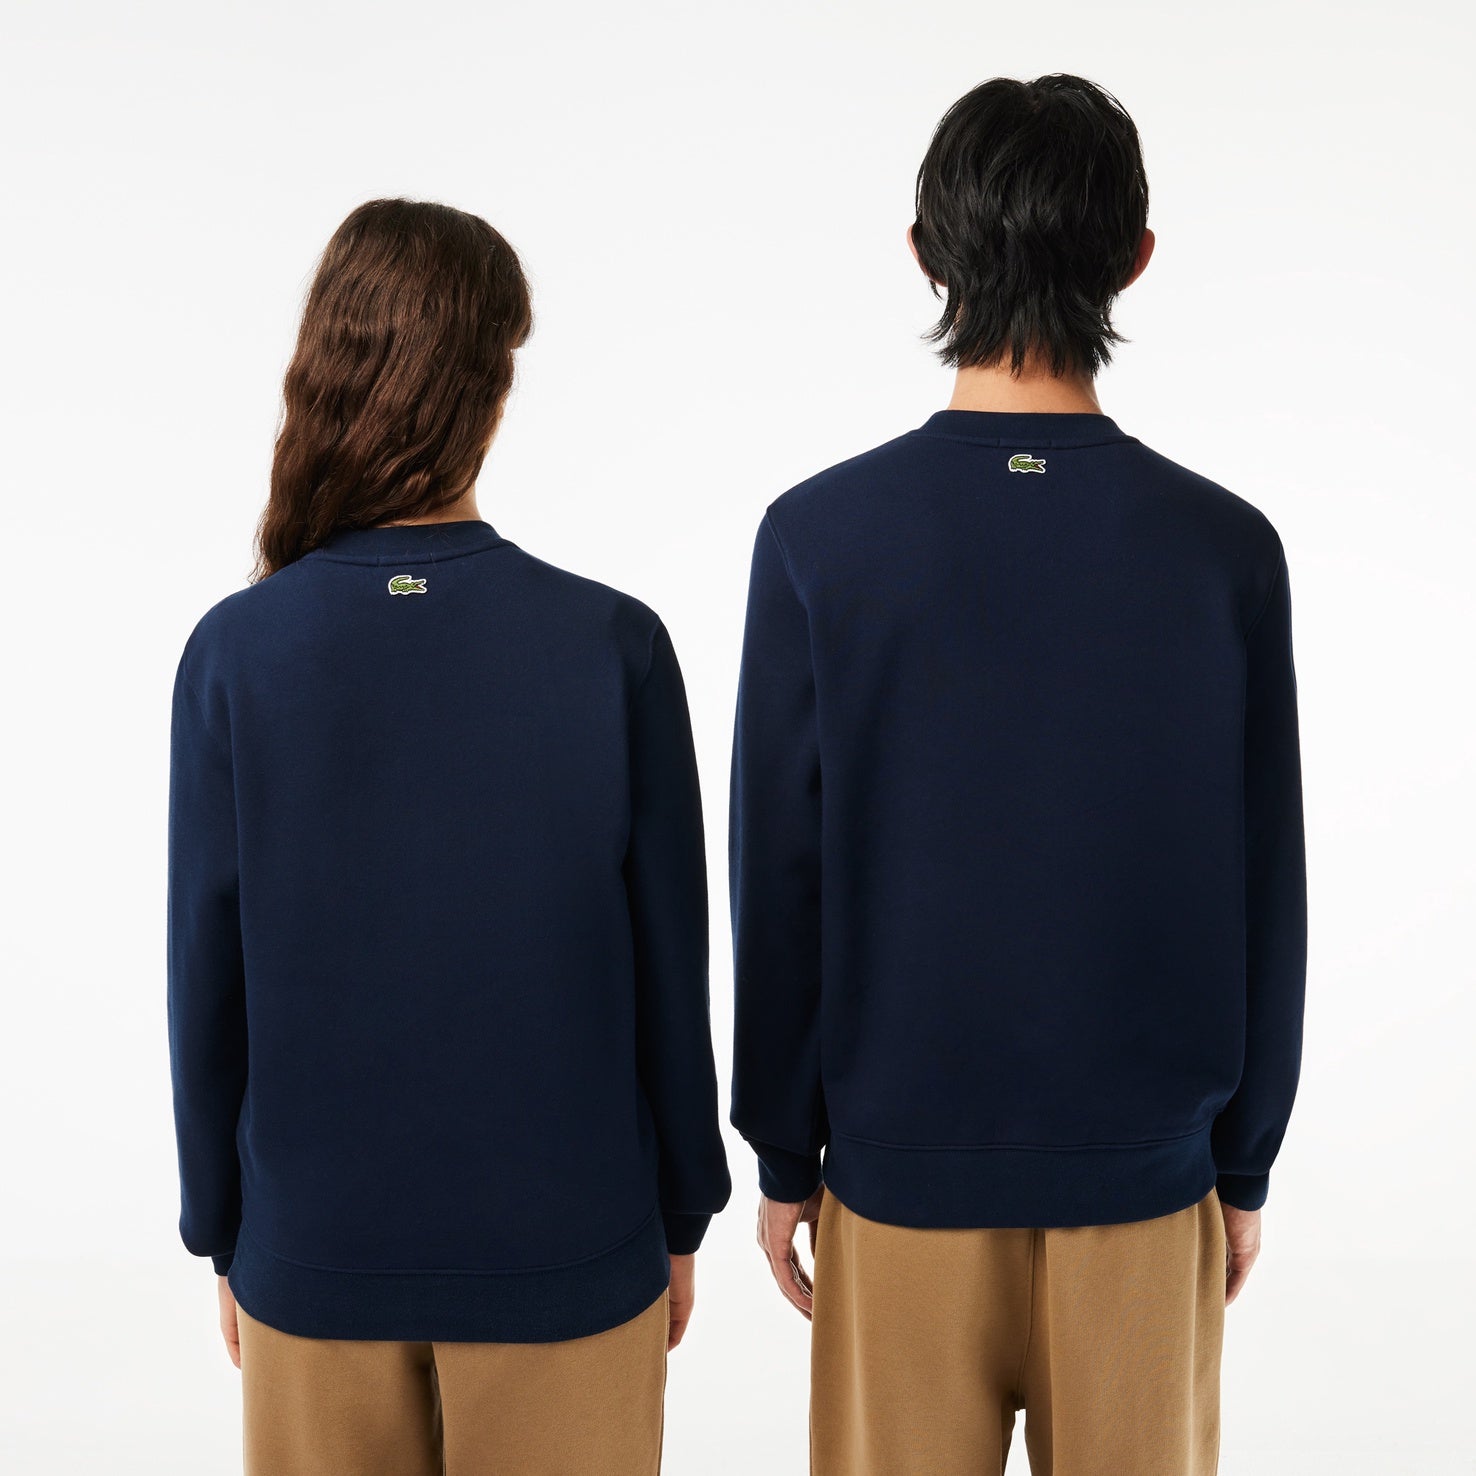 Blue 166 Lacoste Branded Cotton Navy SH1228 Sweatshirt Fleece